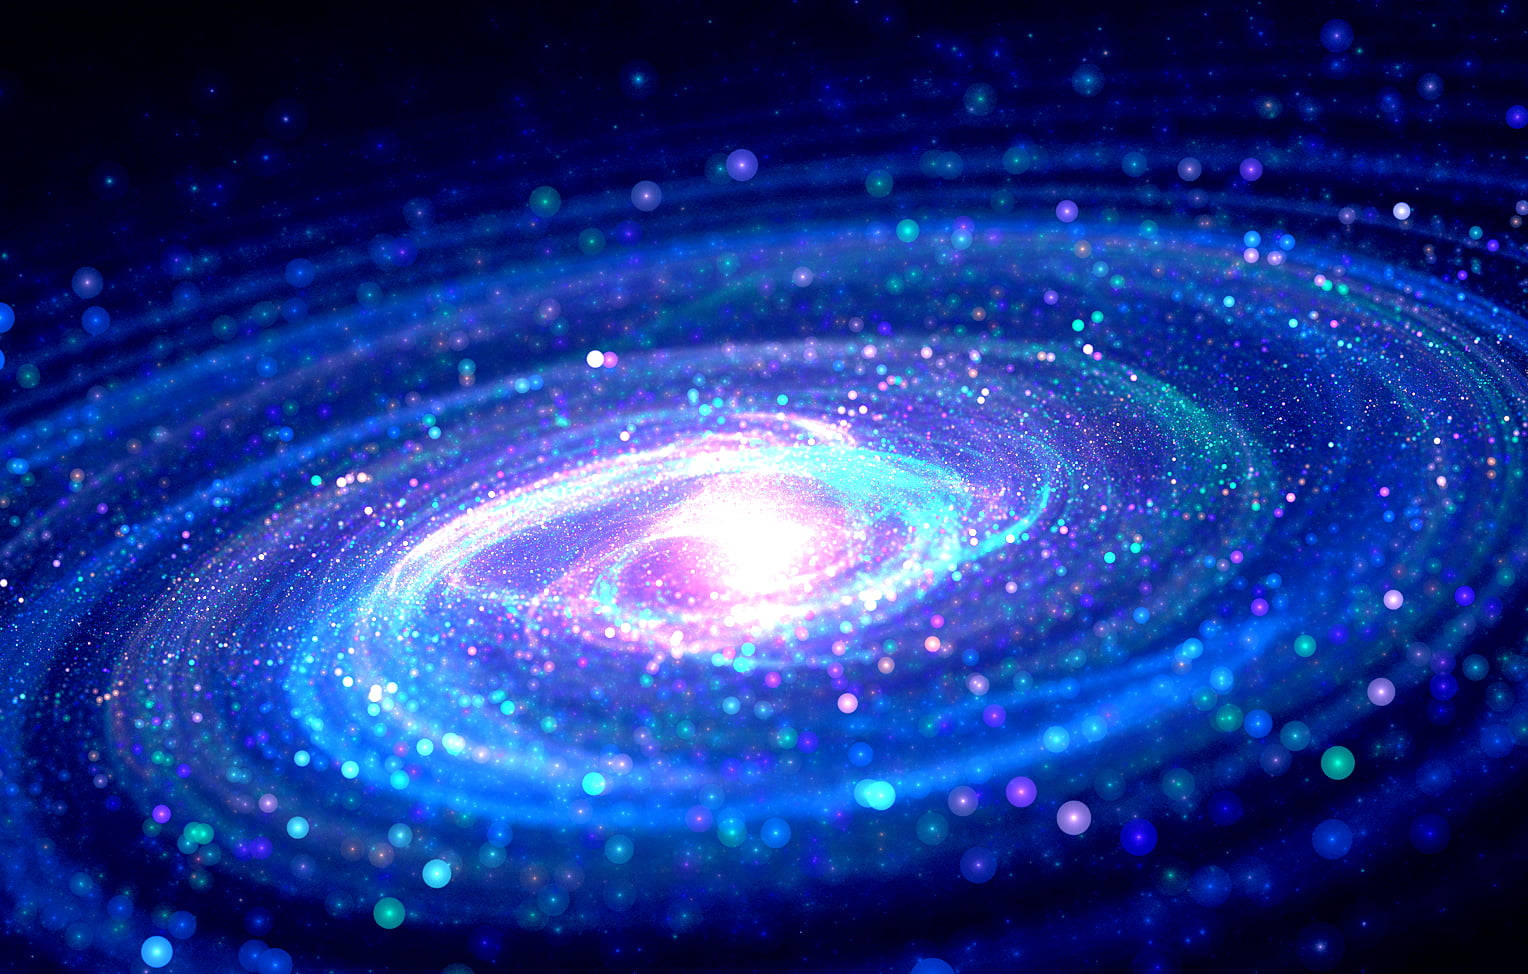 Hình nền thiên hà ngân hà sẽ đưa bạn vào trải nghiệm tuyệt vời cùng với sự lãng mạn của ngân hà đầy ánh sáng. Từ trong phòng ngủ đến văn phòng làm việc, hình nền này sẽ tạo ra không gian chuyên nghiệp và đầy mơ mộng cho bất kỳ người nào.